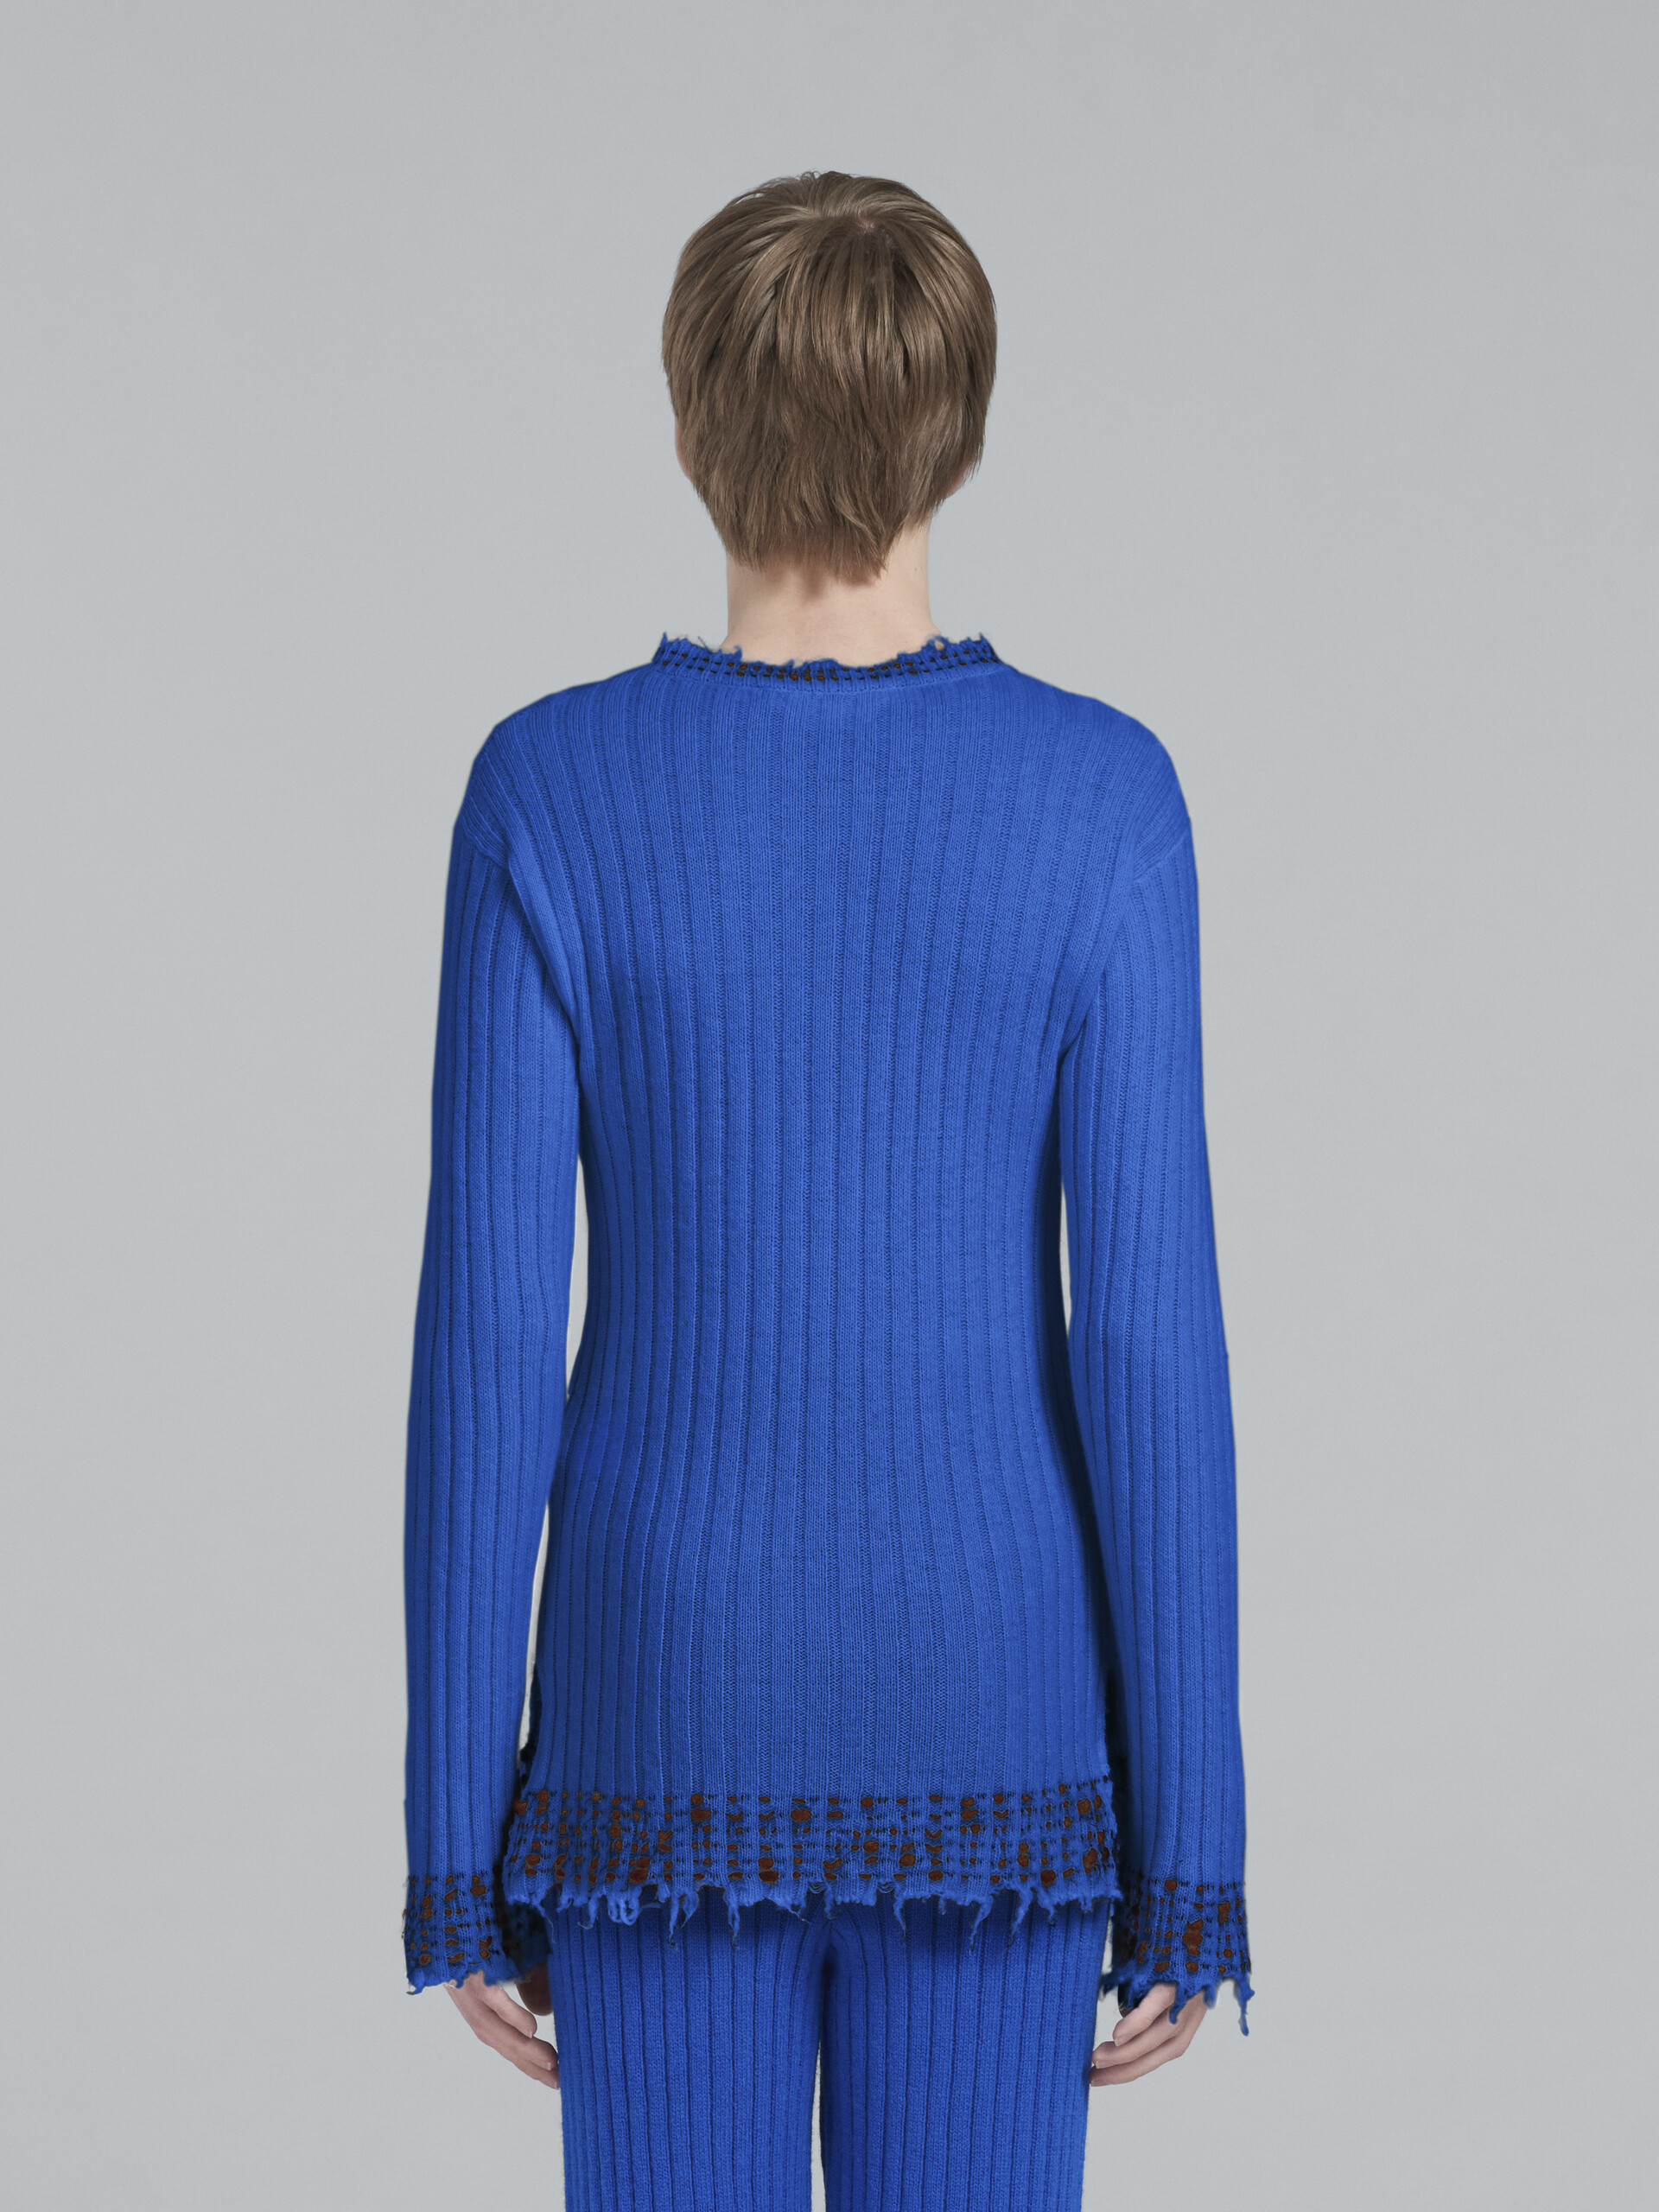 Blauer Strickpullover aus Wolle - Pullover - Image 3